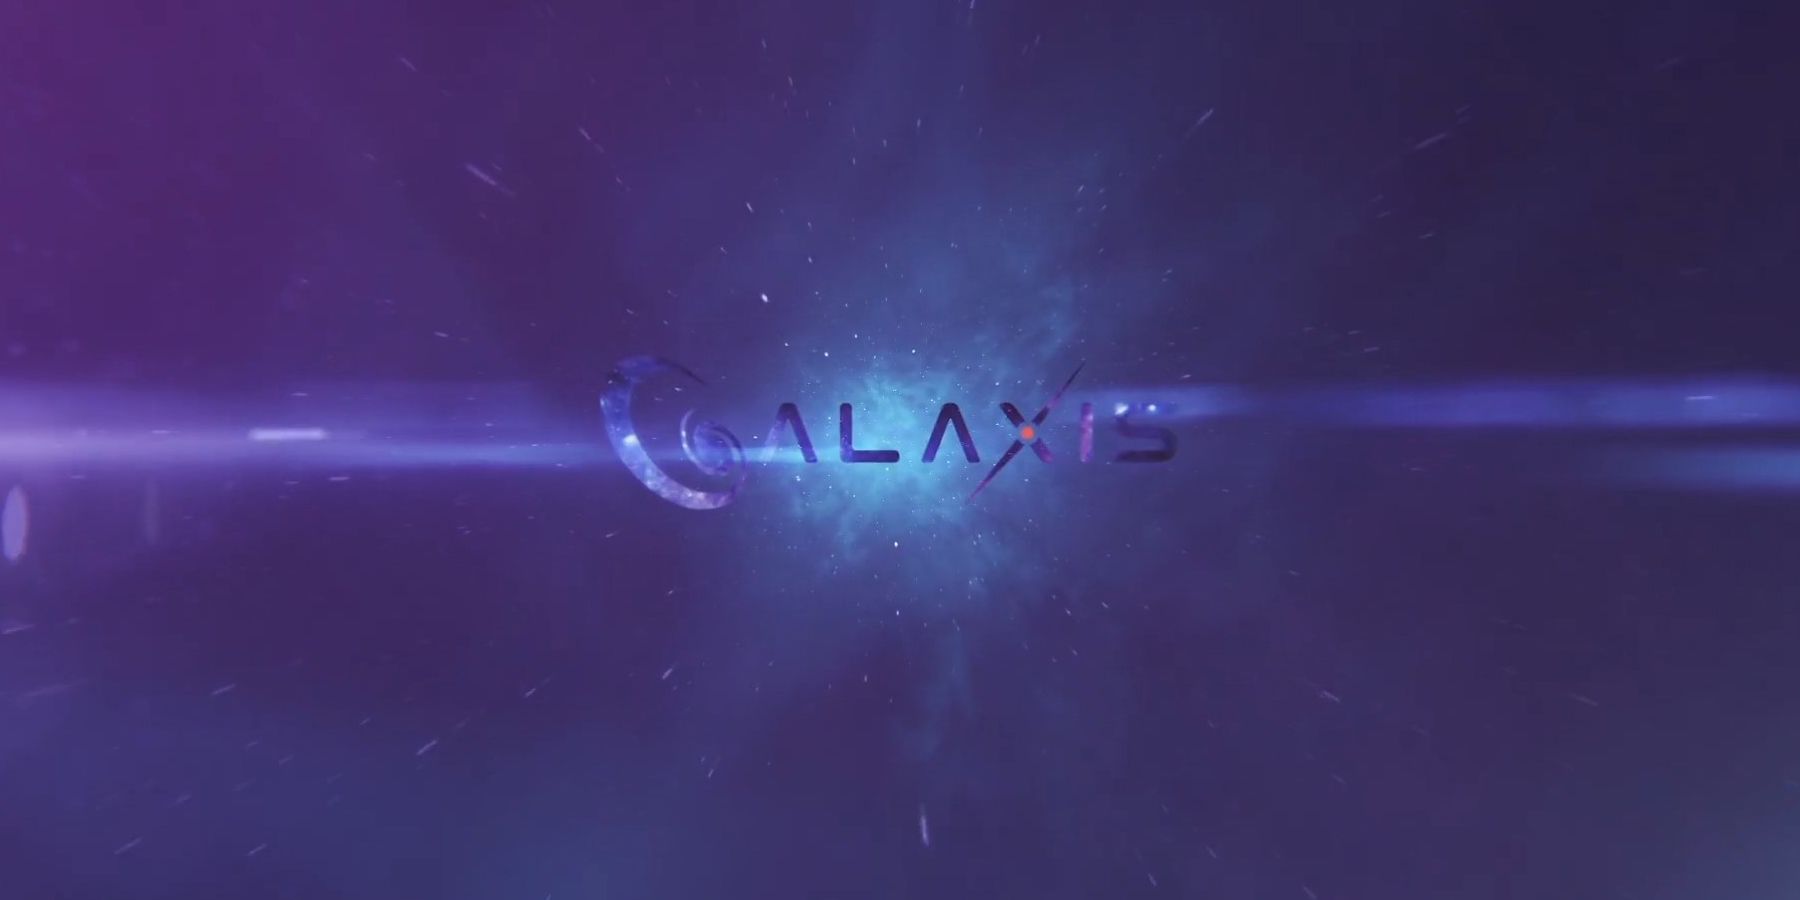 Interviu galaxis: CEO -ul Max Gallardo detaliază sistemele de puncte de streaming, moderarea comunității și multe altele